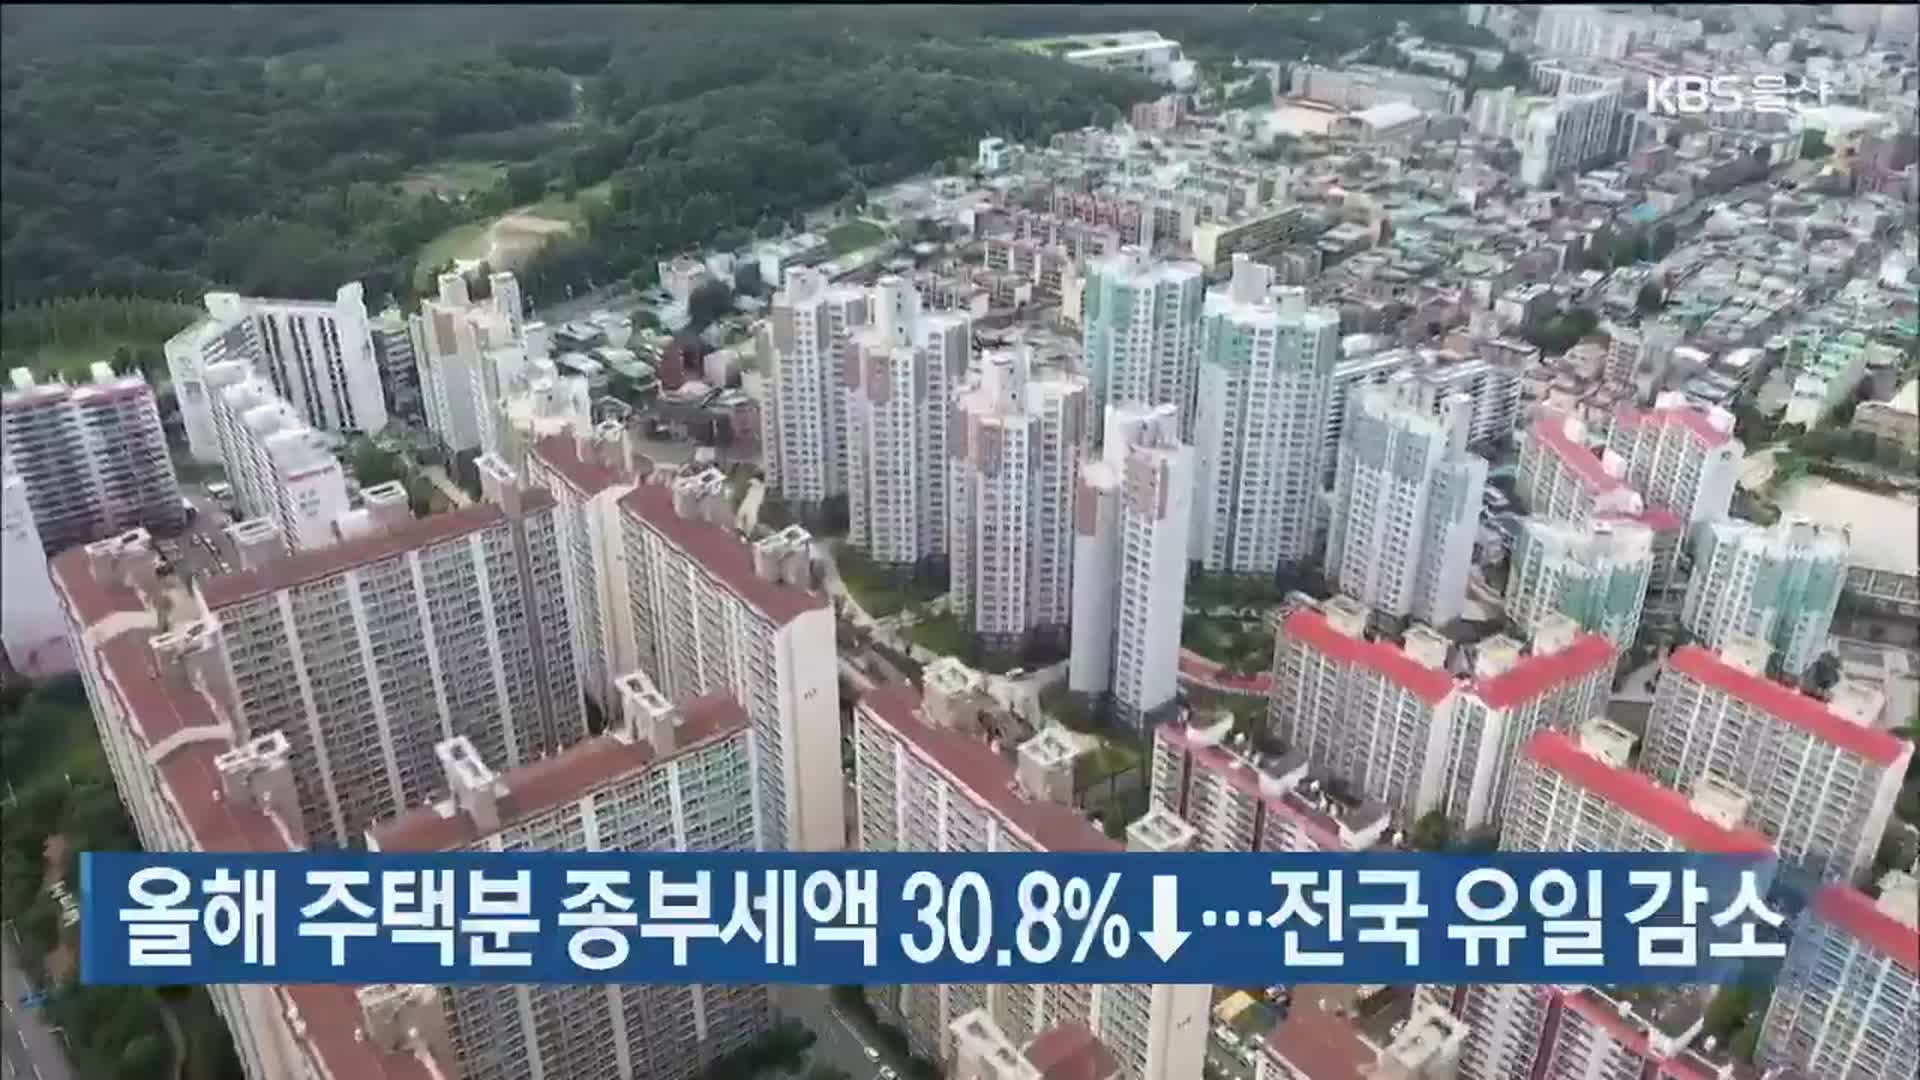 올해 주택분 종부세액 30.8%↓…전국 유일 감소